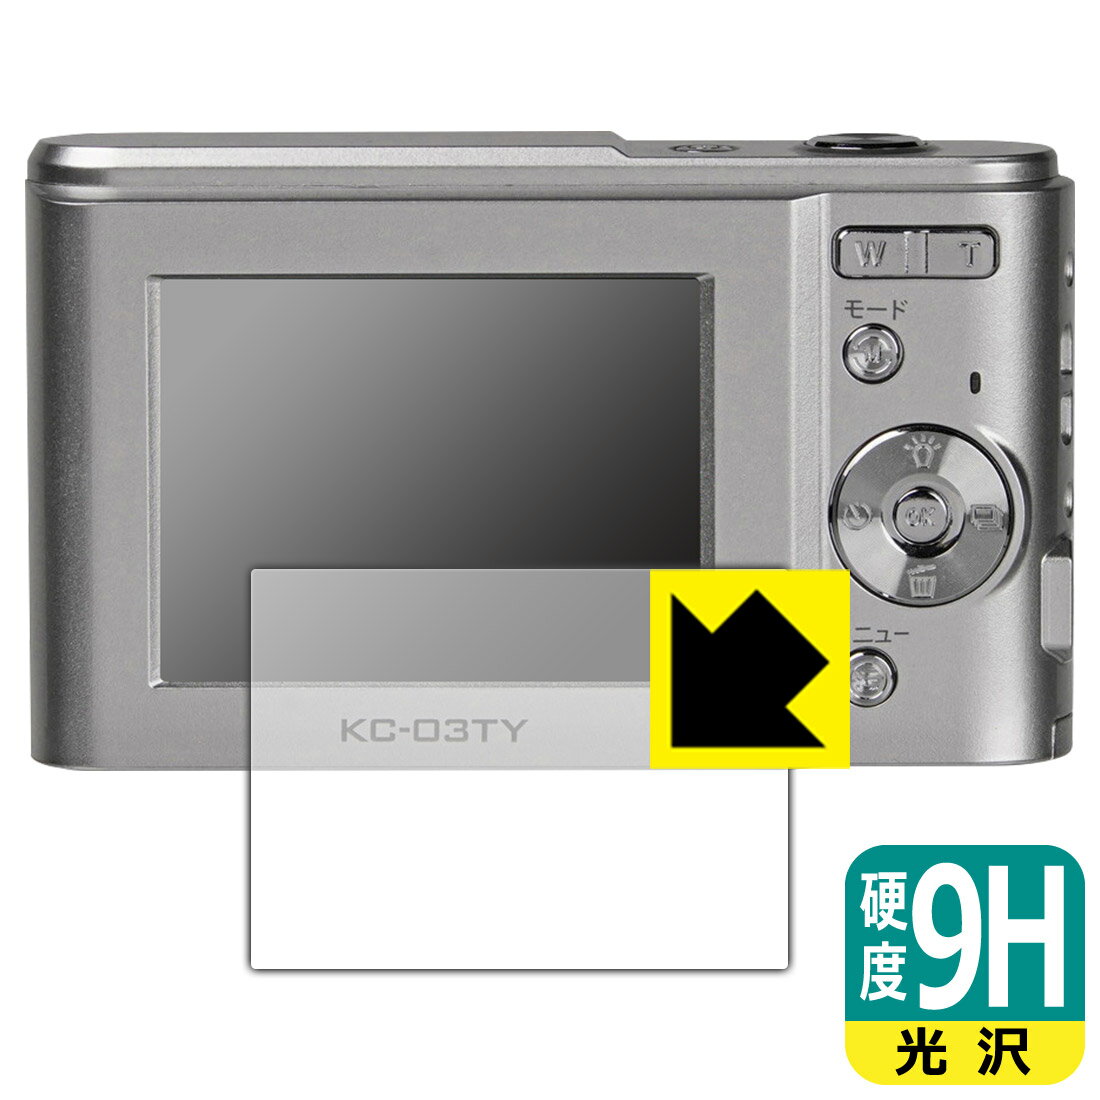 PDA工房 デジタルカメラ KC-03TY 対応 9H高硬度[光沢] 保護 フィルム 日本製 日本製 自社製造直販